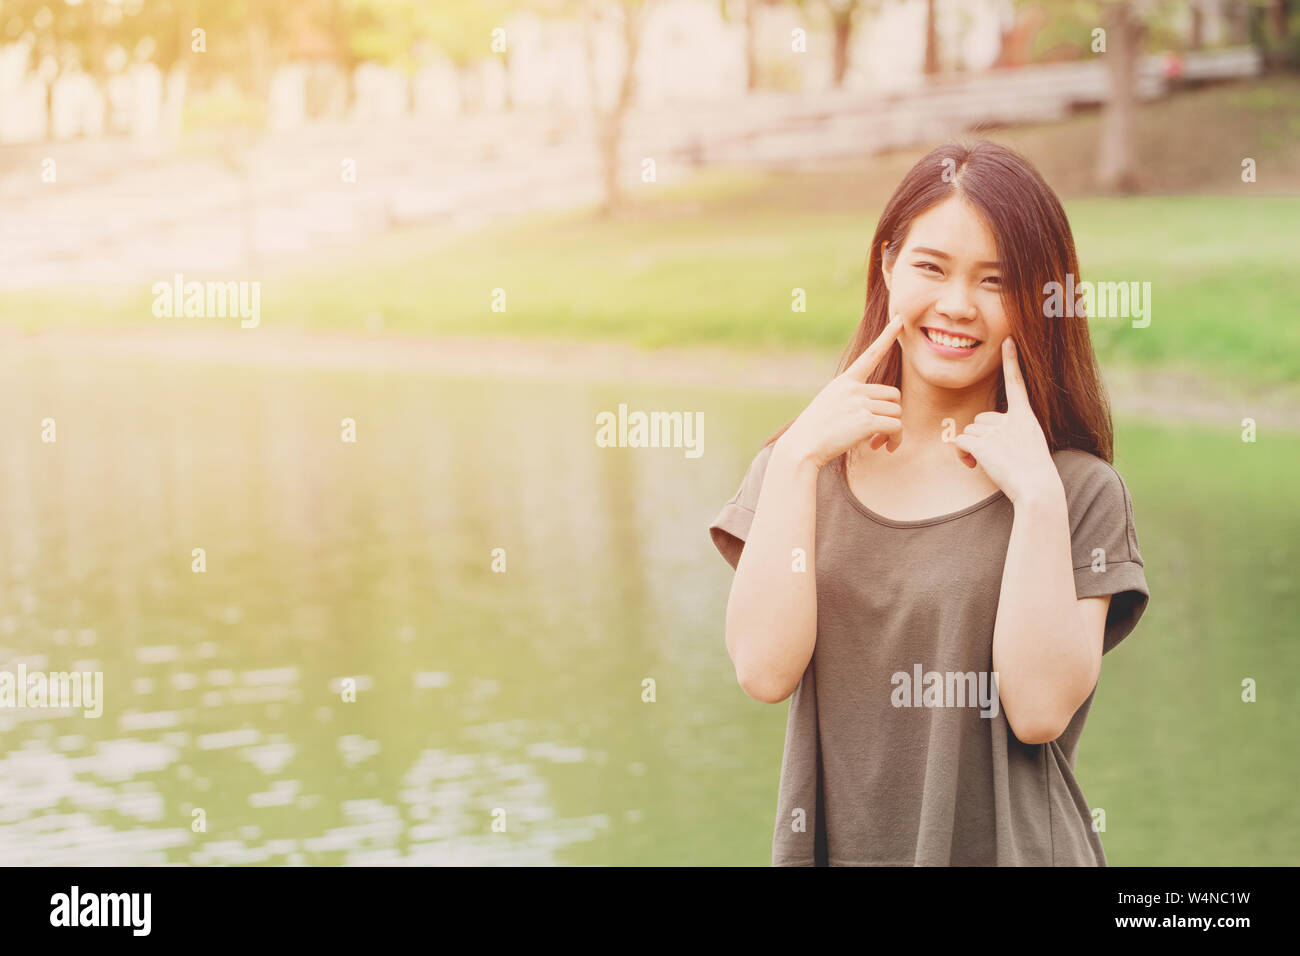 Carino ragazza asiatica mano alla guancia sorridendo a lago d acqua park outdoor giornata di sole Foto Stock